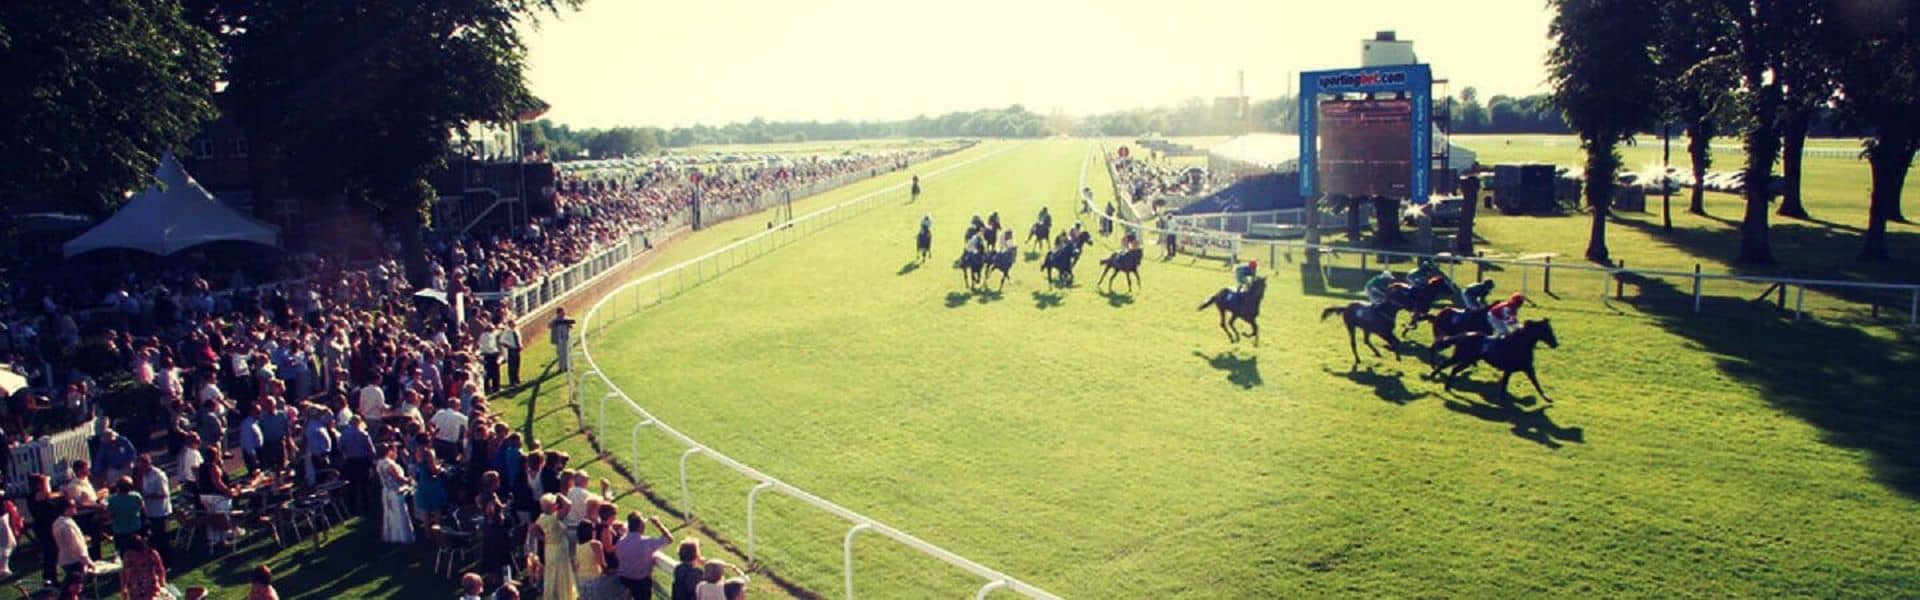 Royal Windsor Racecourse in UK